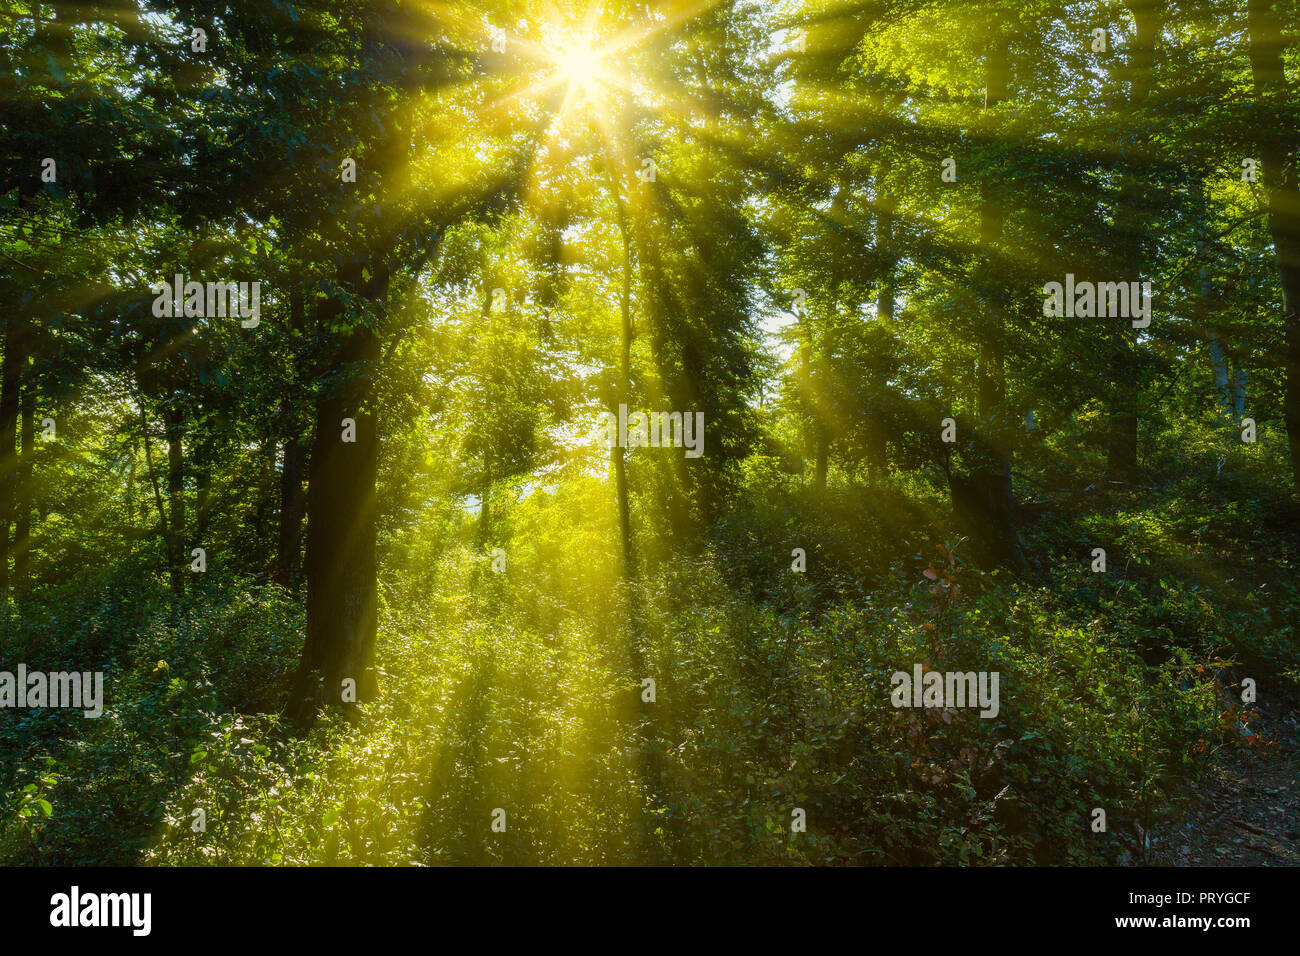 Sonnenstrahl im Wald Stock Photo